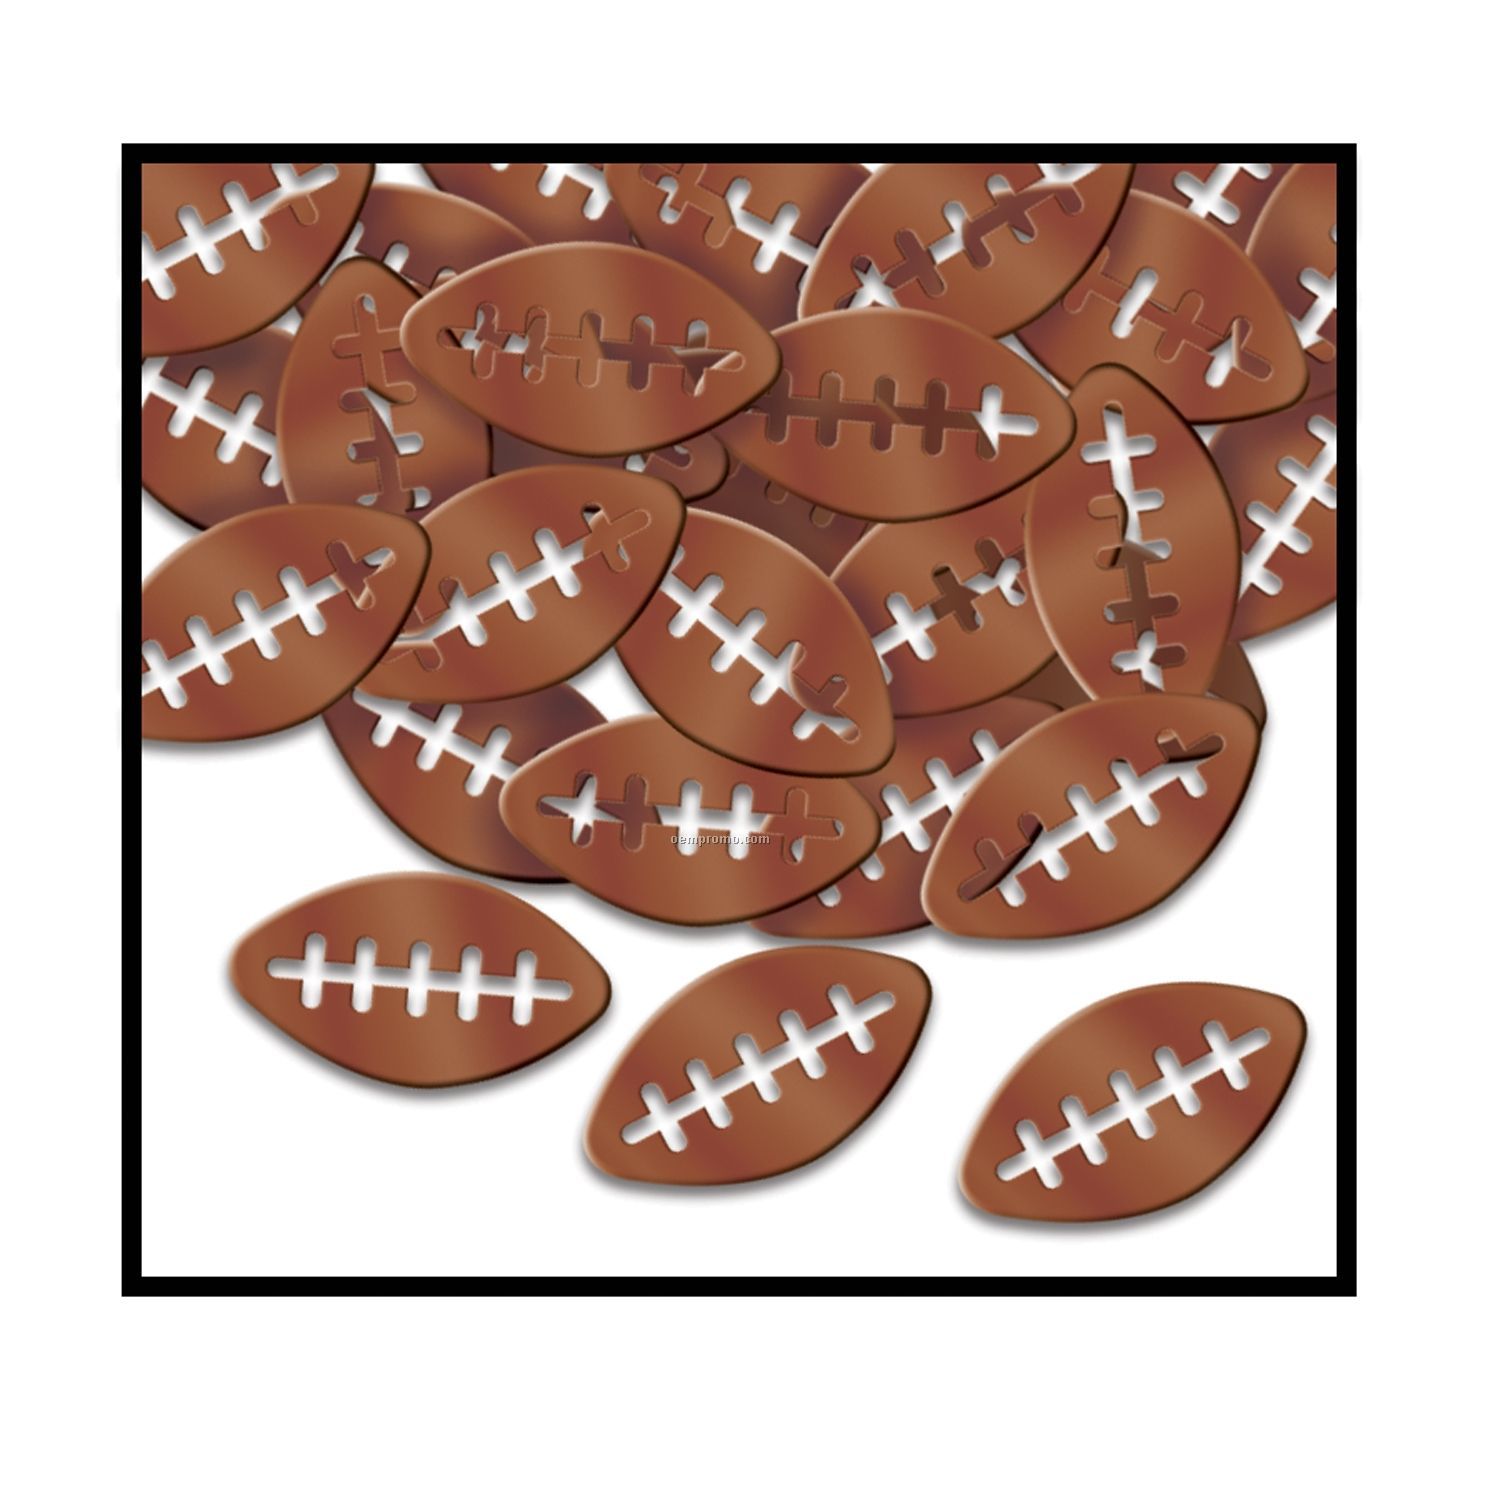 Fanci-fetti Football Confetti